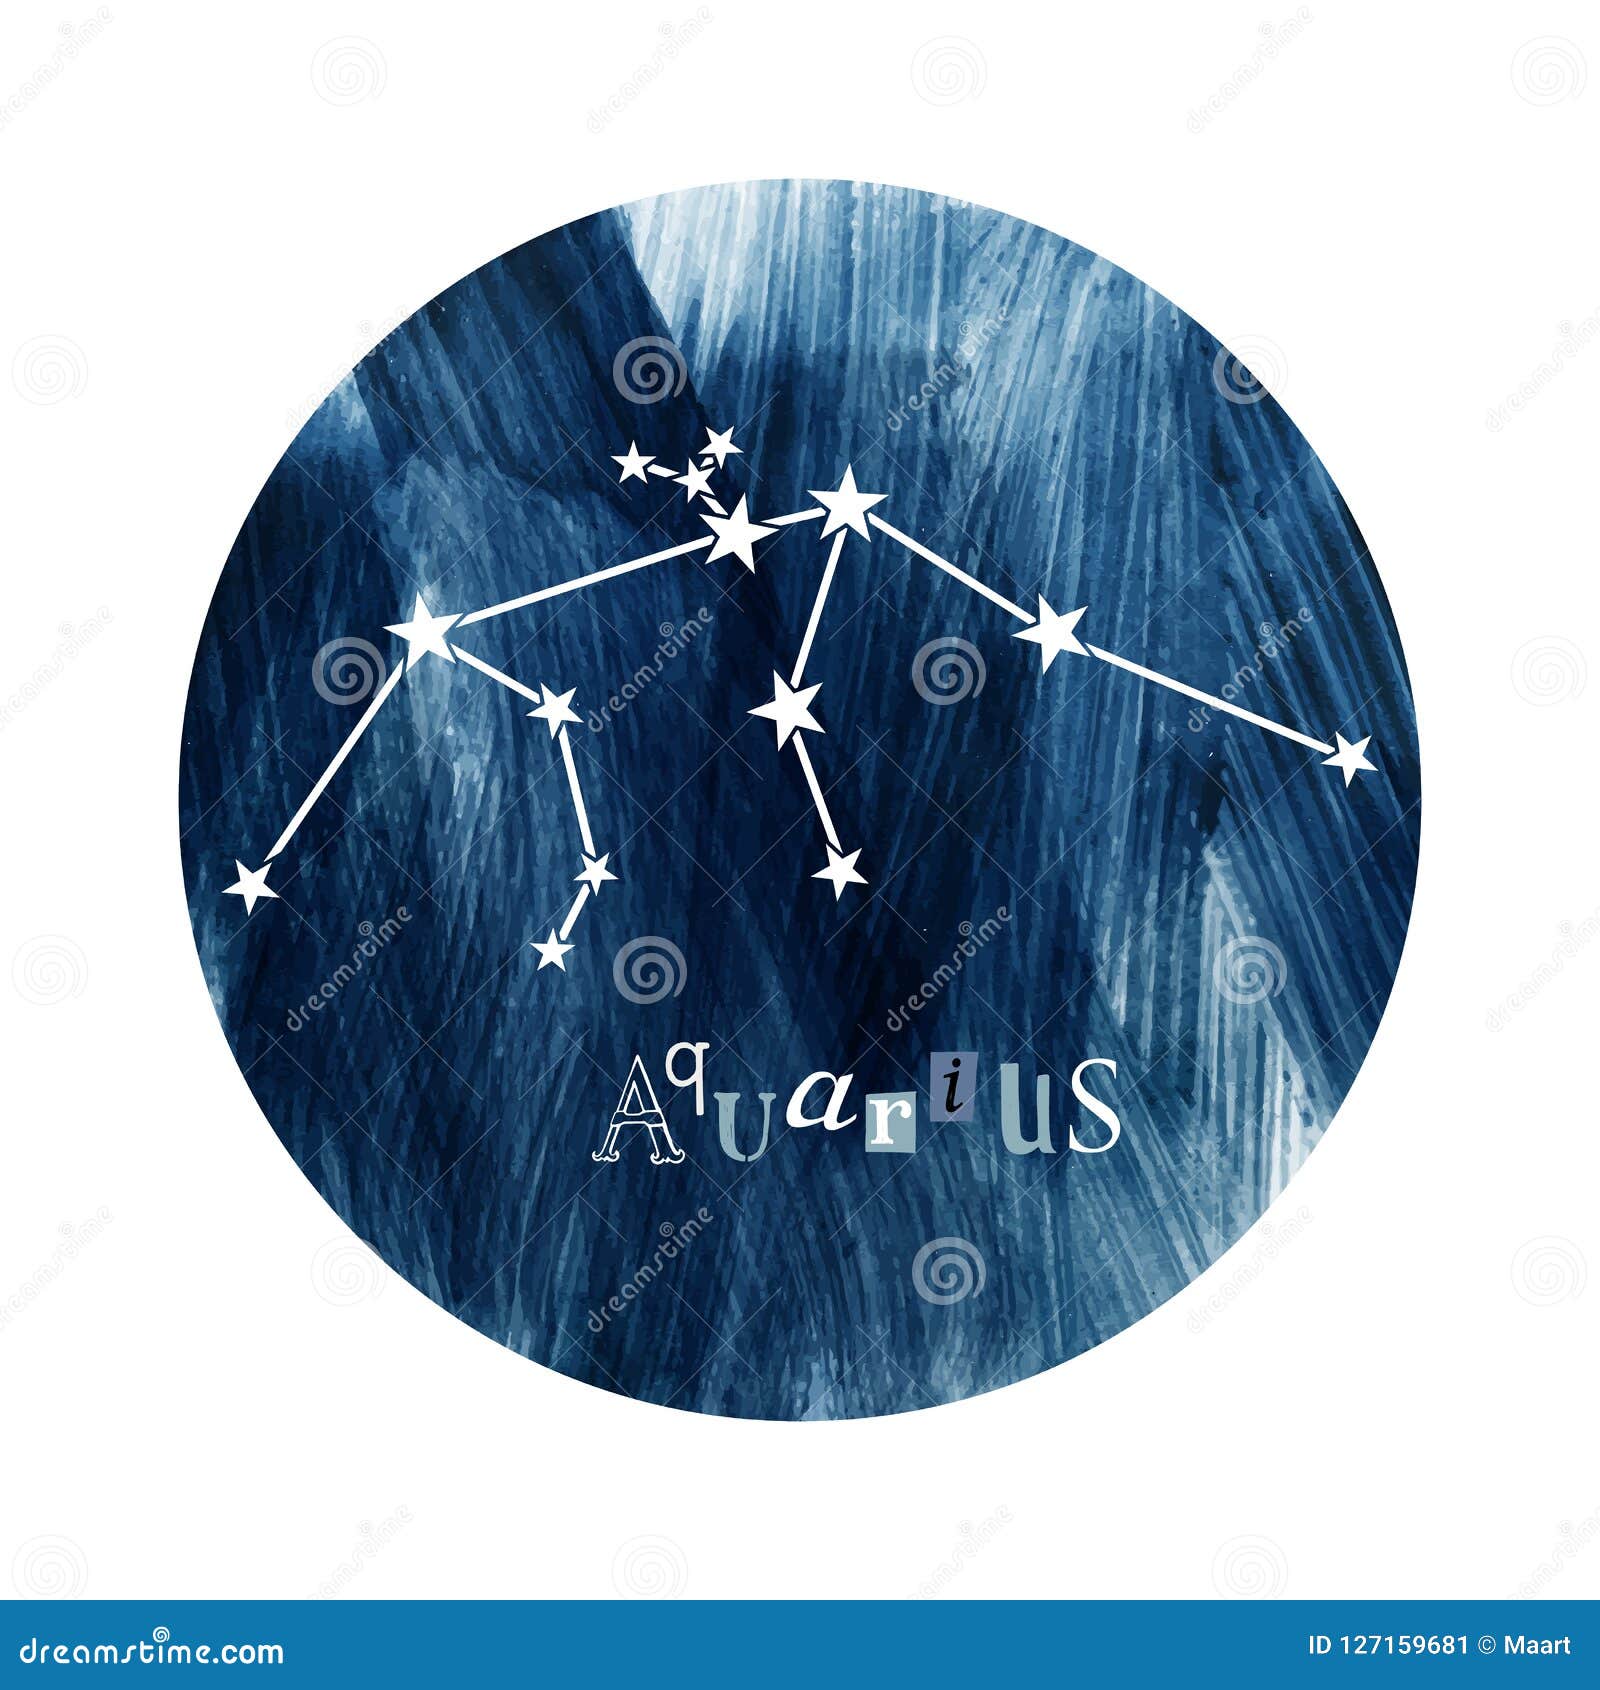 The Aquarius constellation stock vector. Illustration of magic - 127159681